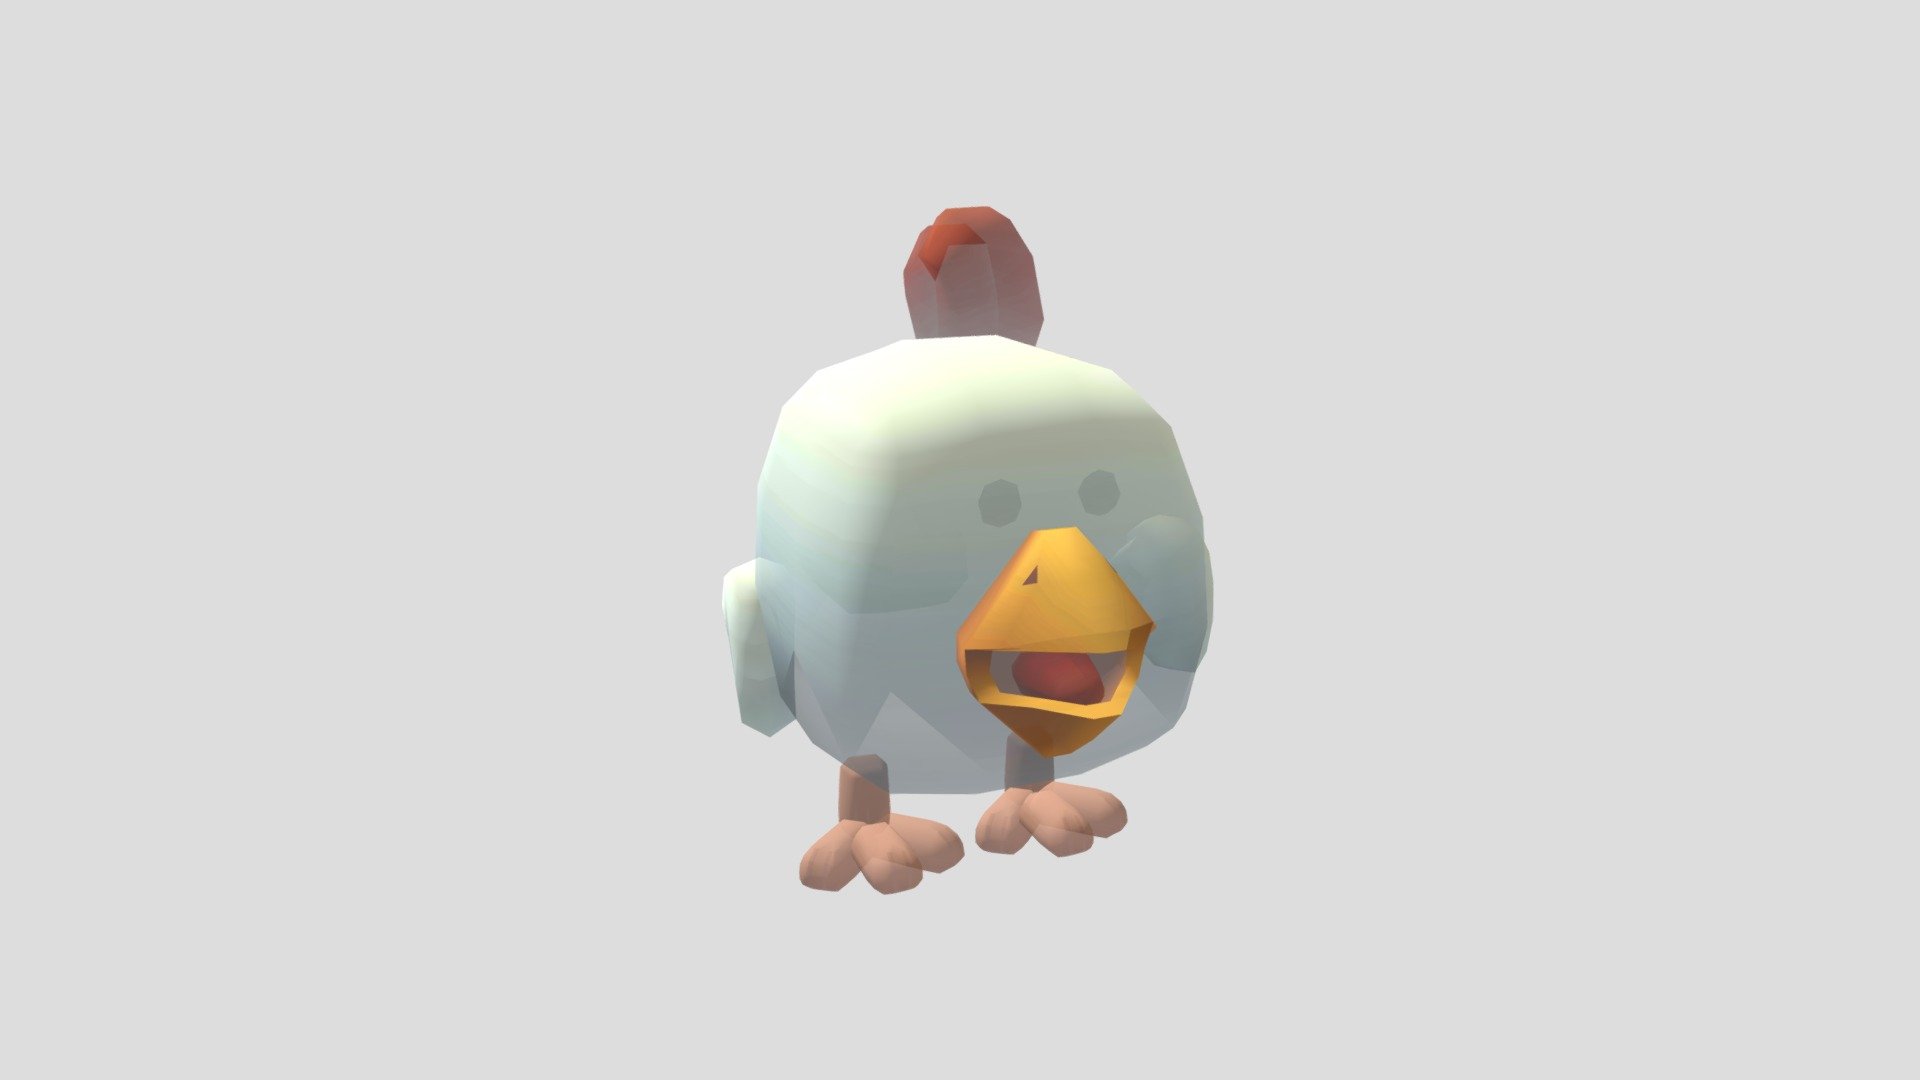 Chickengun 3D models - Sketchfab